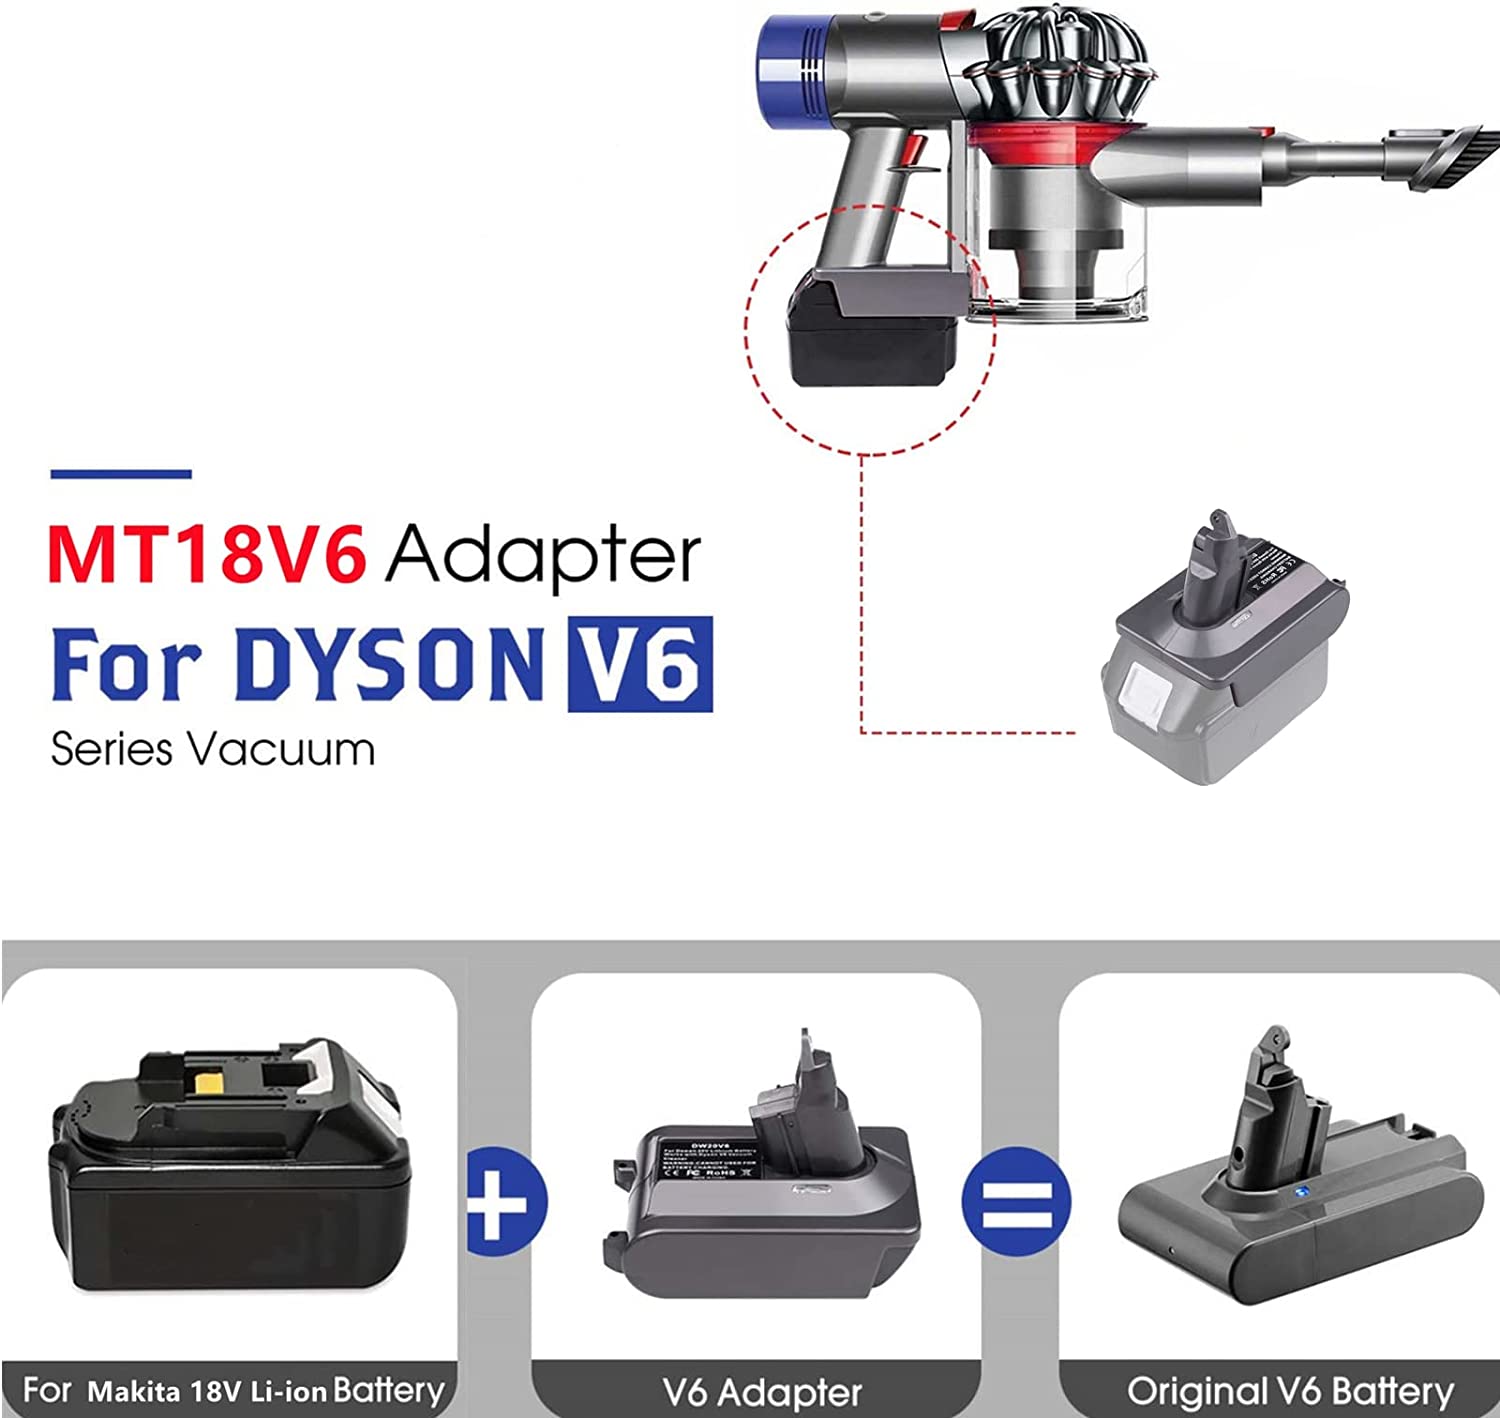 Adattatore batteria Dyson V6 per batteria al litio Makita 18V convertita in batteria Dyson V6